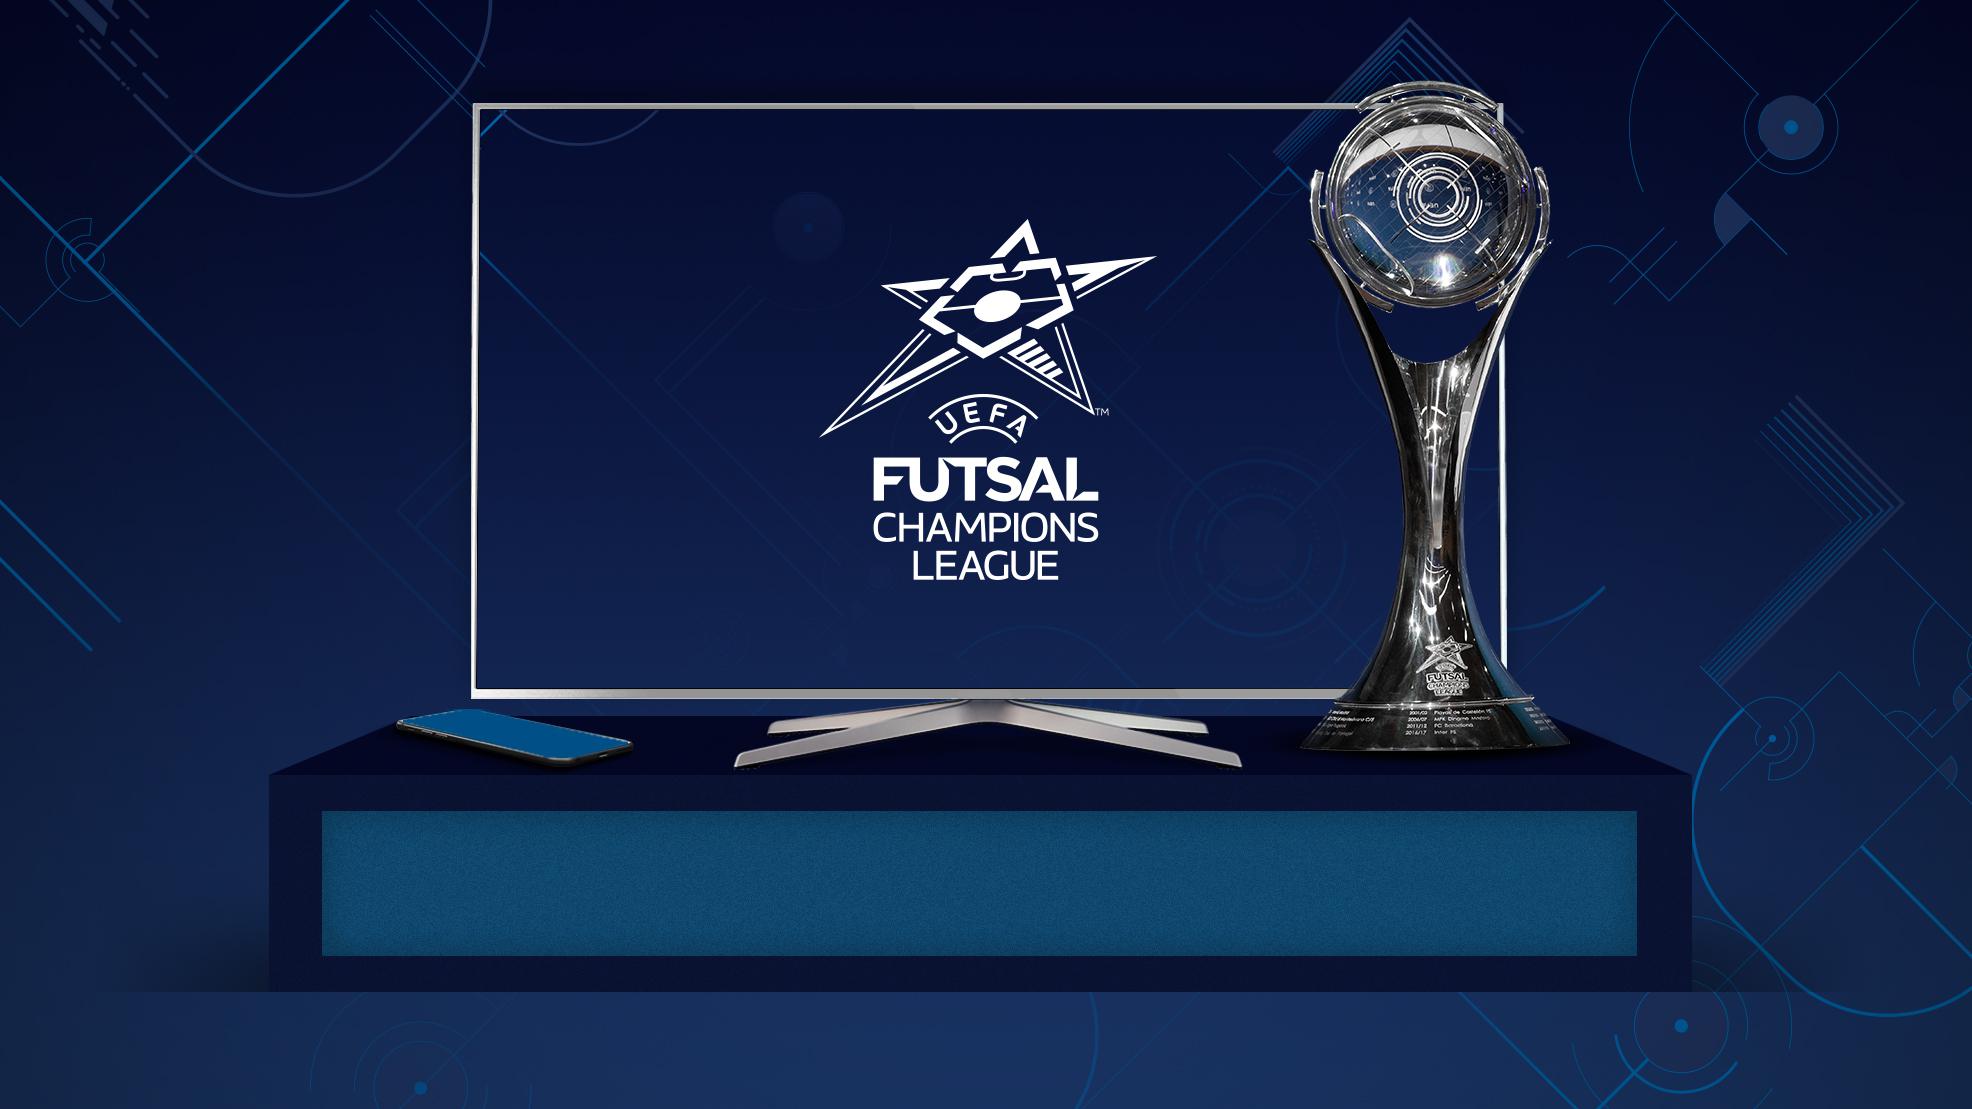 Πού να παρακολουθήσετε τους τελικούς του UEFA Futsal Champions League |  Futsal Champions League